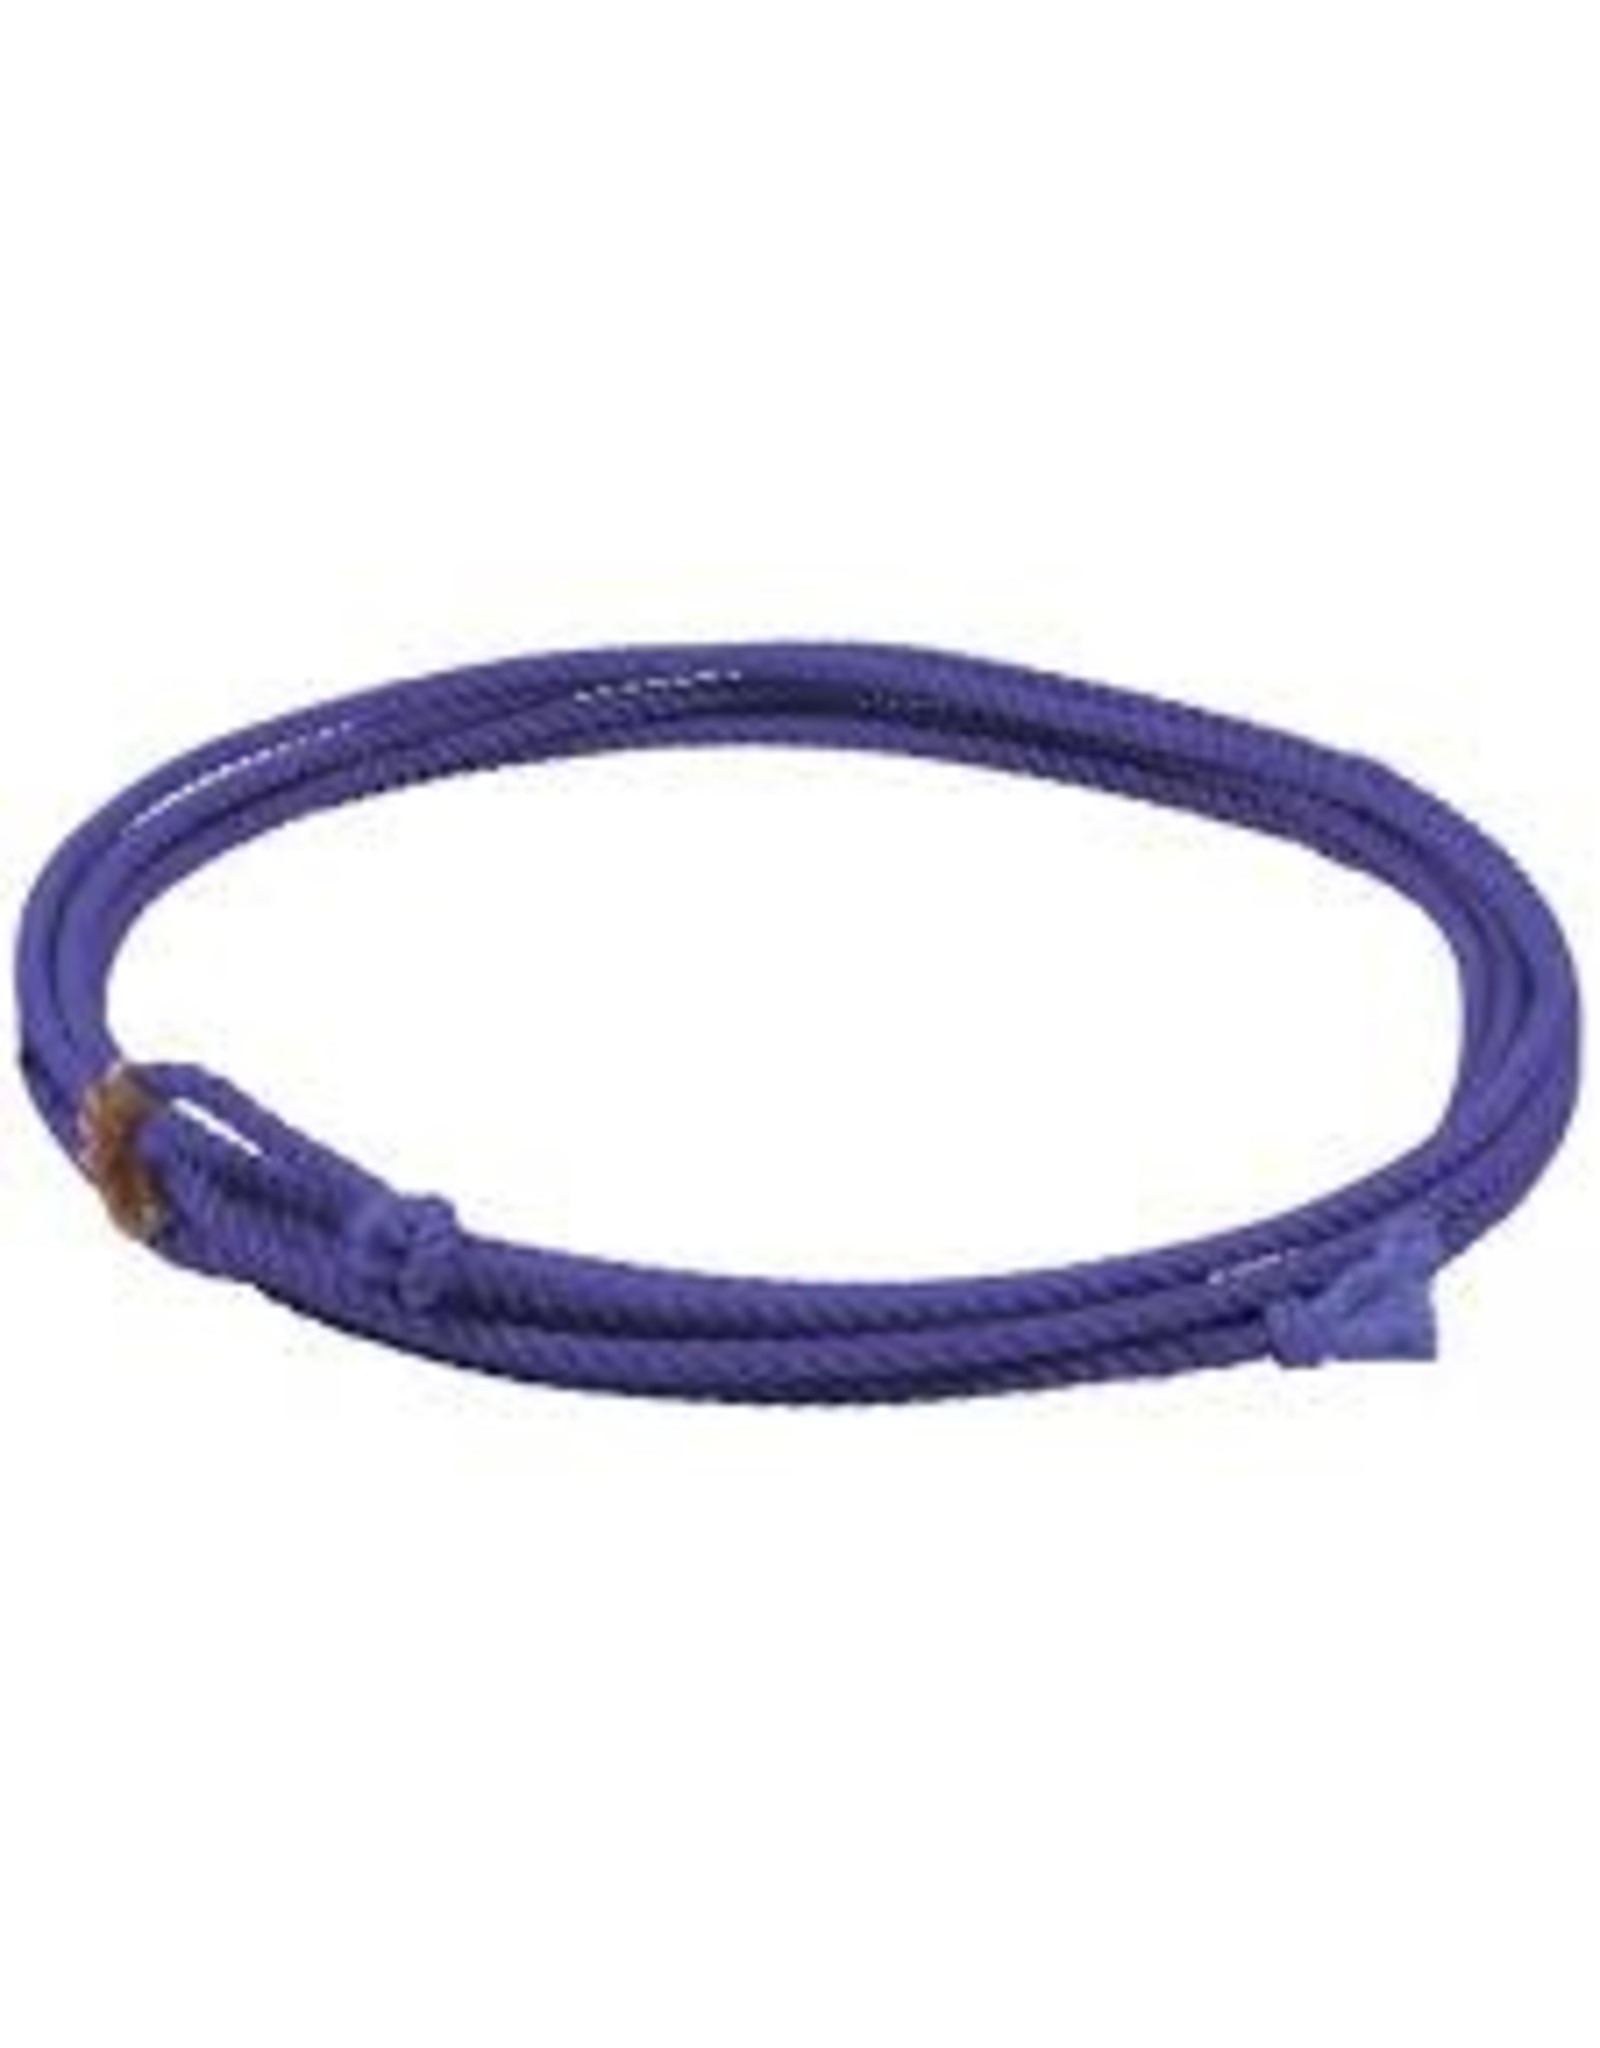 Mustang Little Looper Kids Rope - Purple 20" - 737346-22